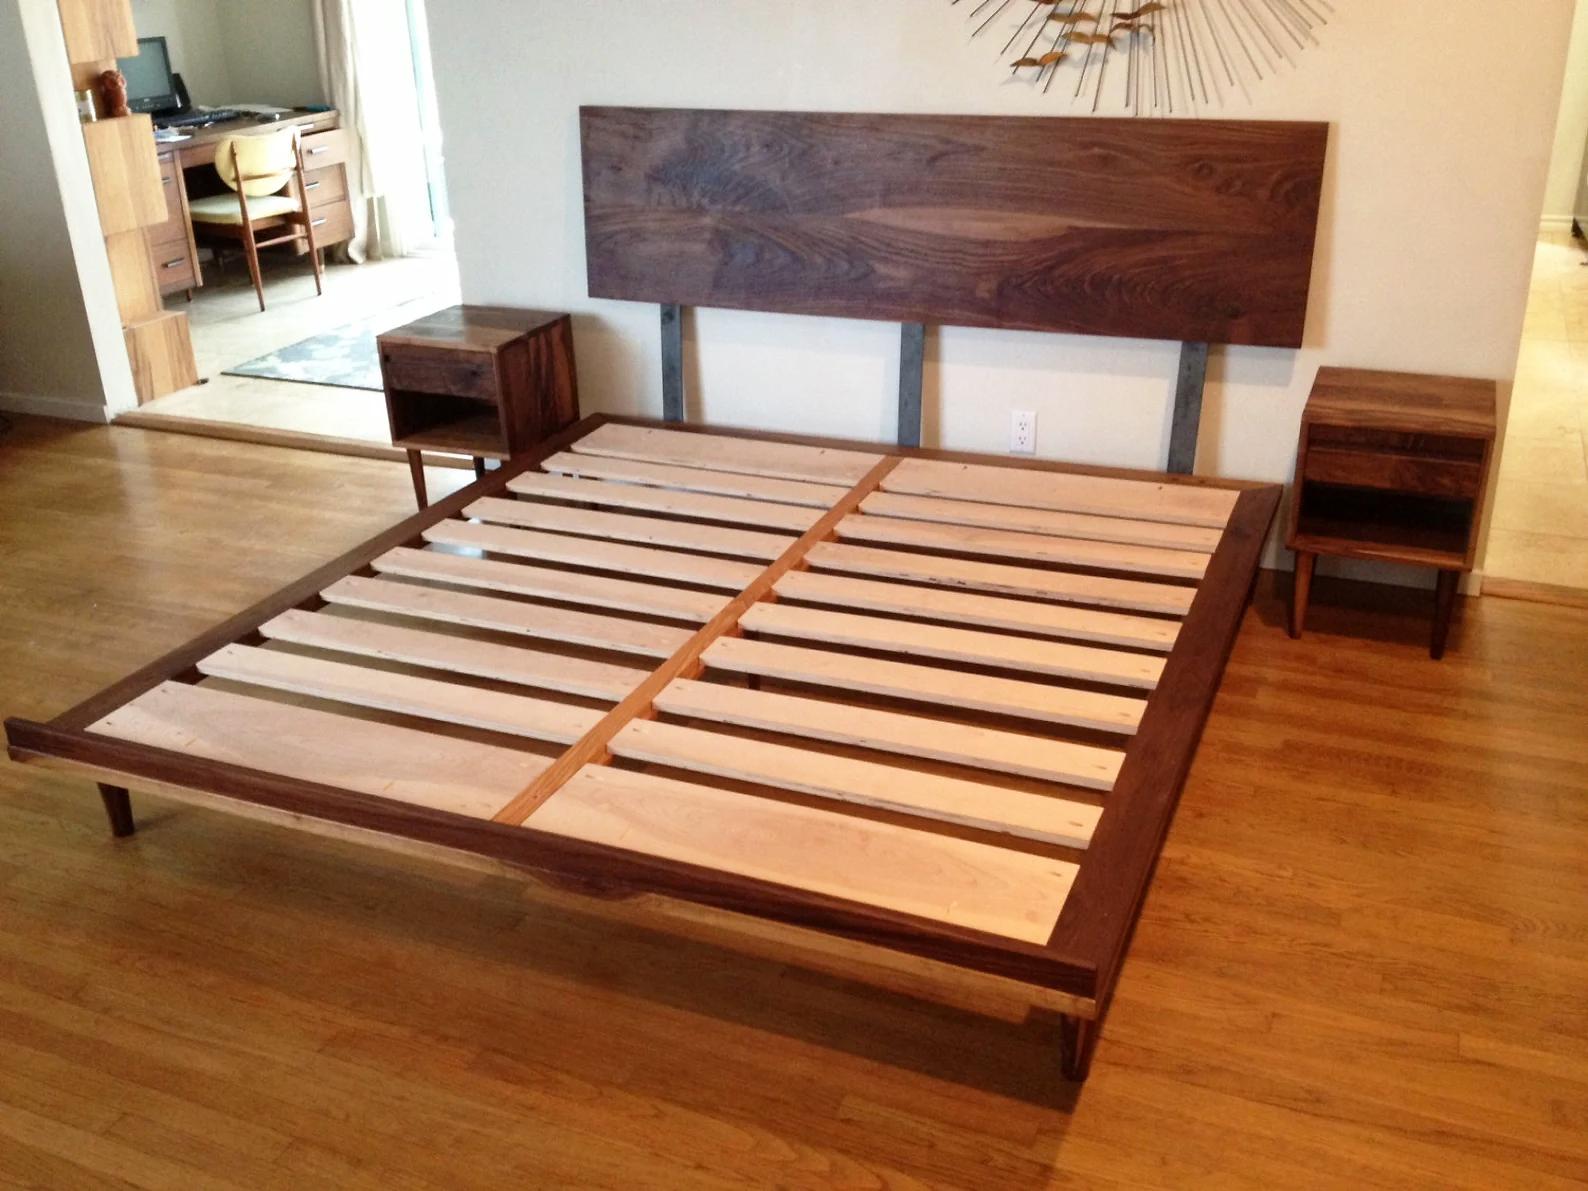 walnut bed frame with storage